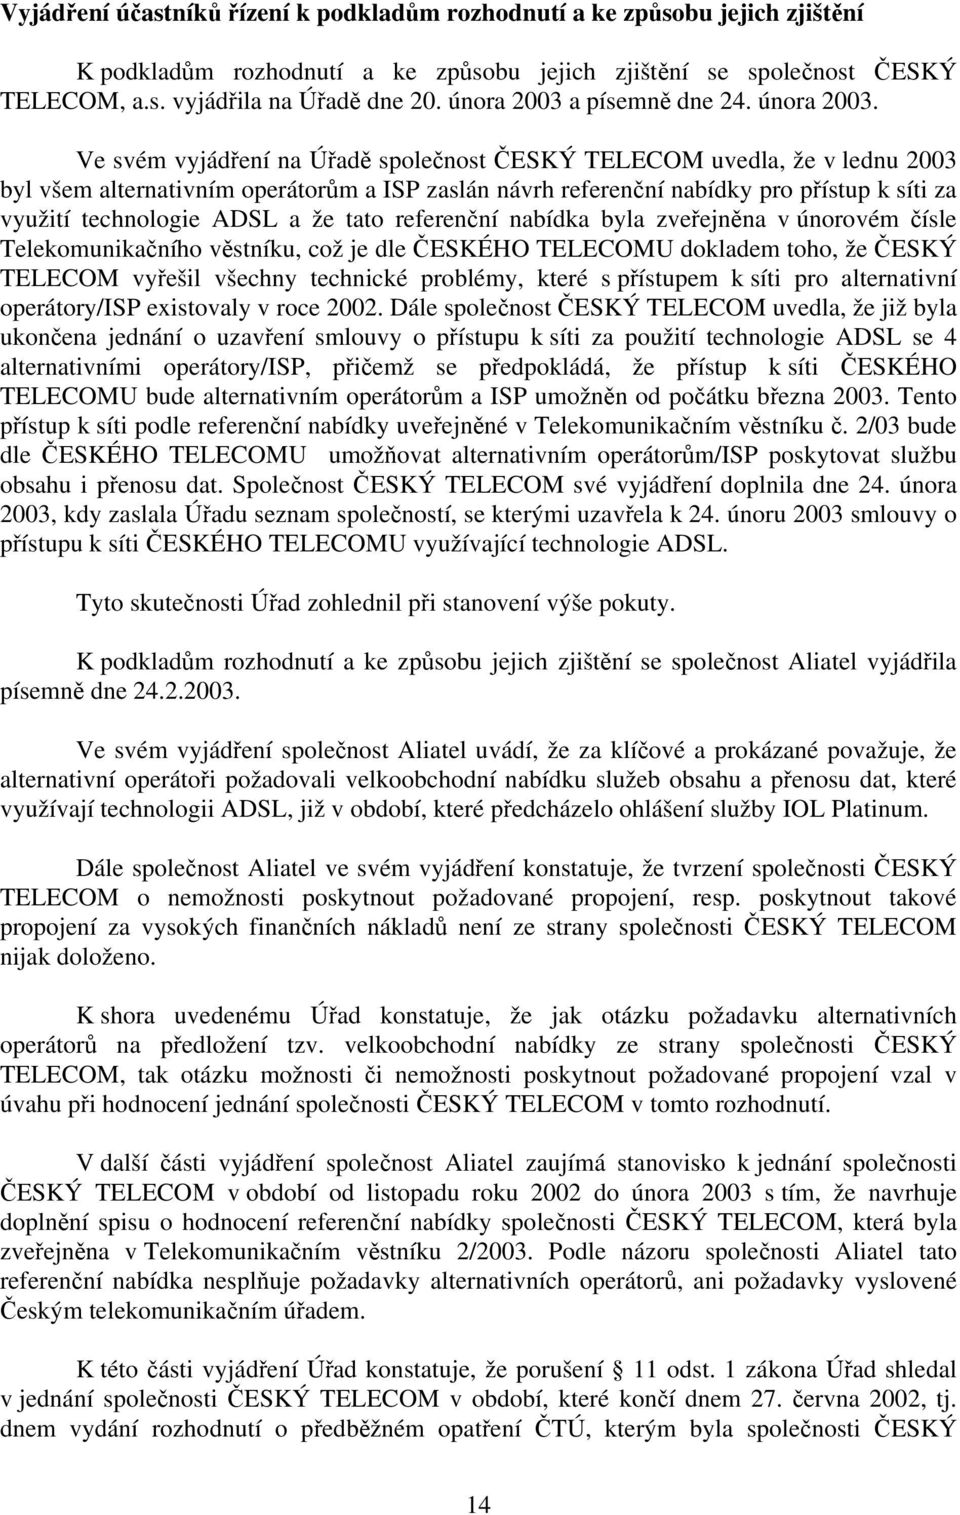 Ve svém vyjádření na Úřadě společnost ČESKÝ TELECOM uvedla, že v lednu 2003 byl všem alternativním operátorům a ISP zaslán návrh referenční nabídky pro přístup k síti za využití technologie ADSL a že